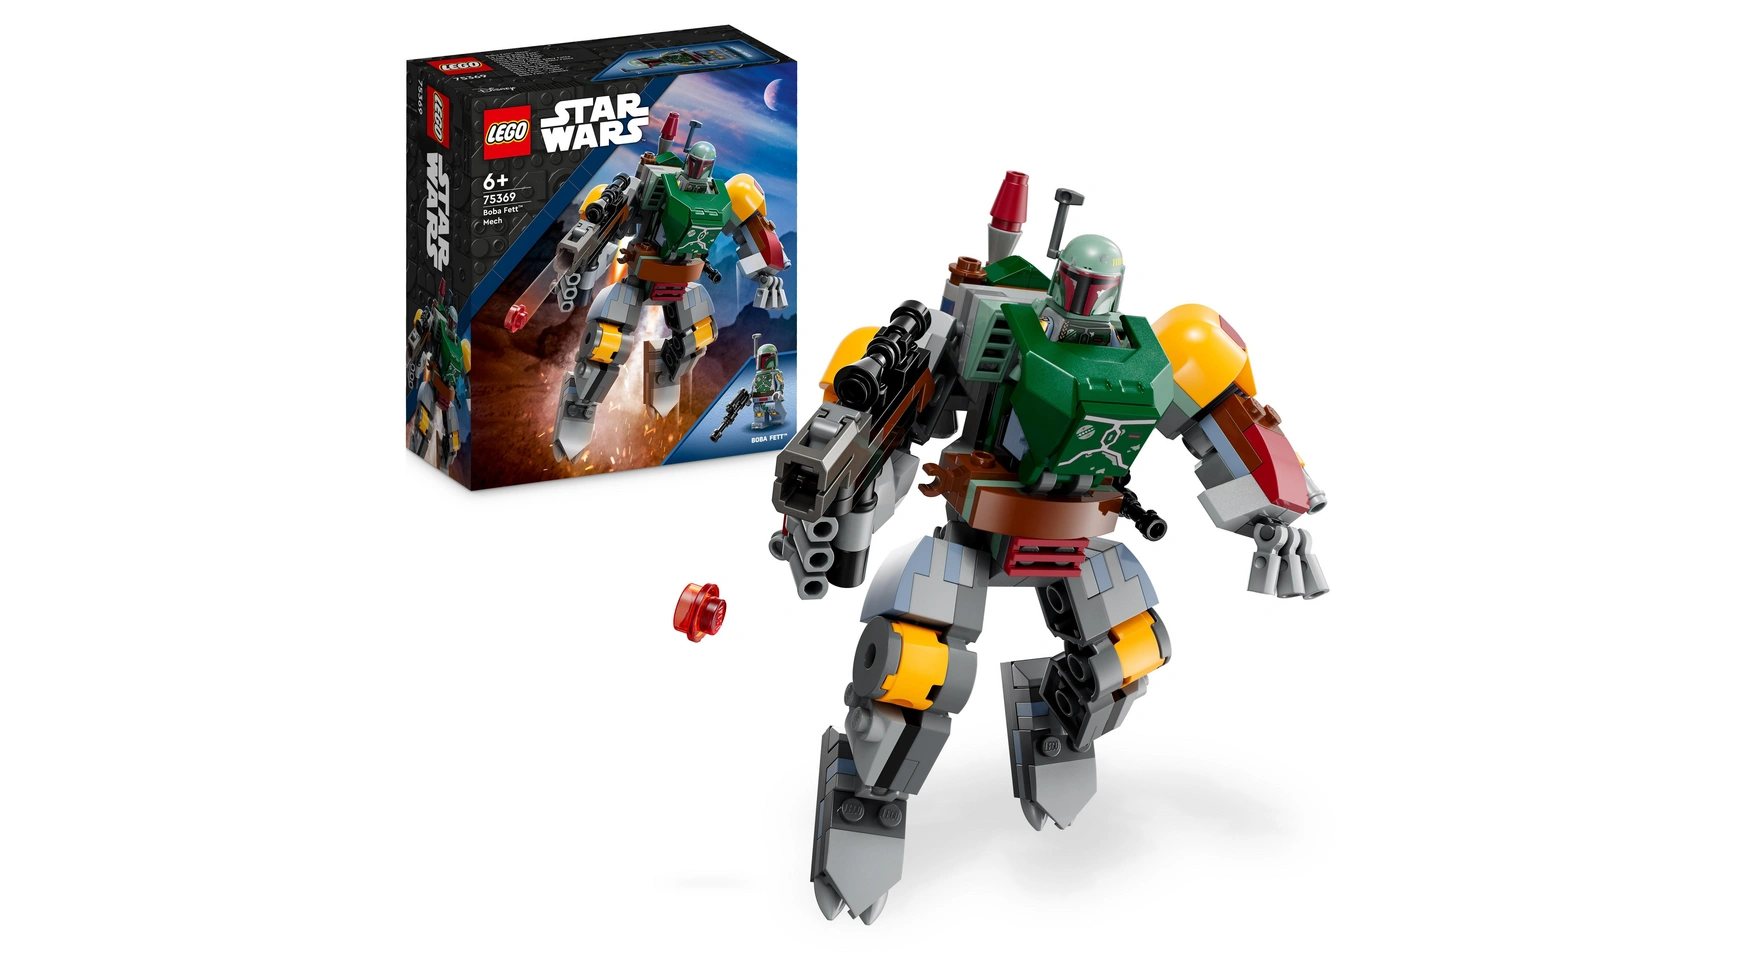 Lego Star Wars Набор роботов Бобы Фетта, сборная фигурка с бластером